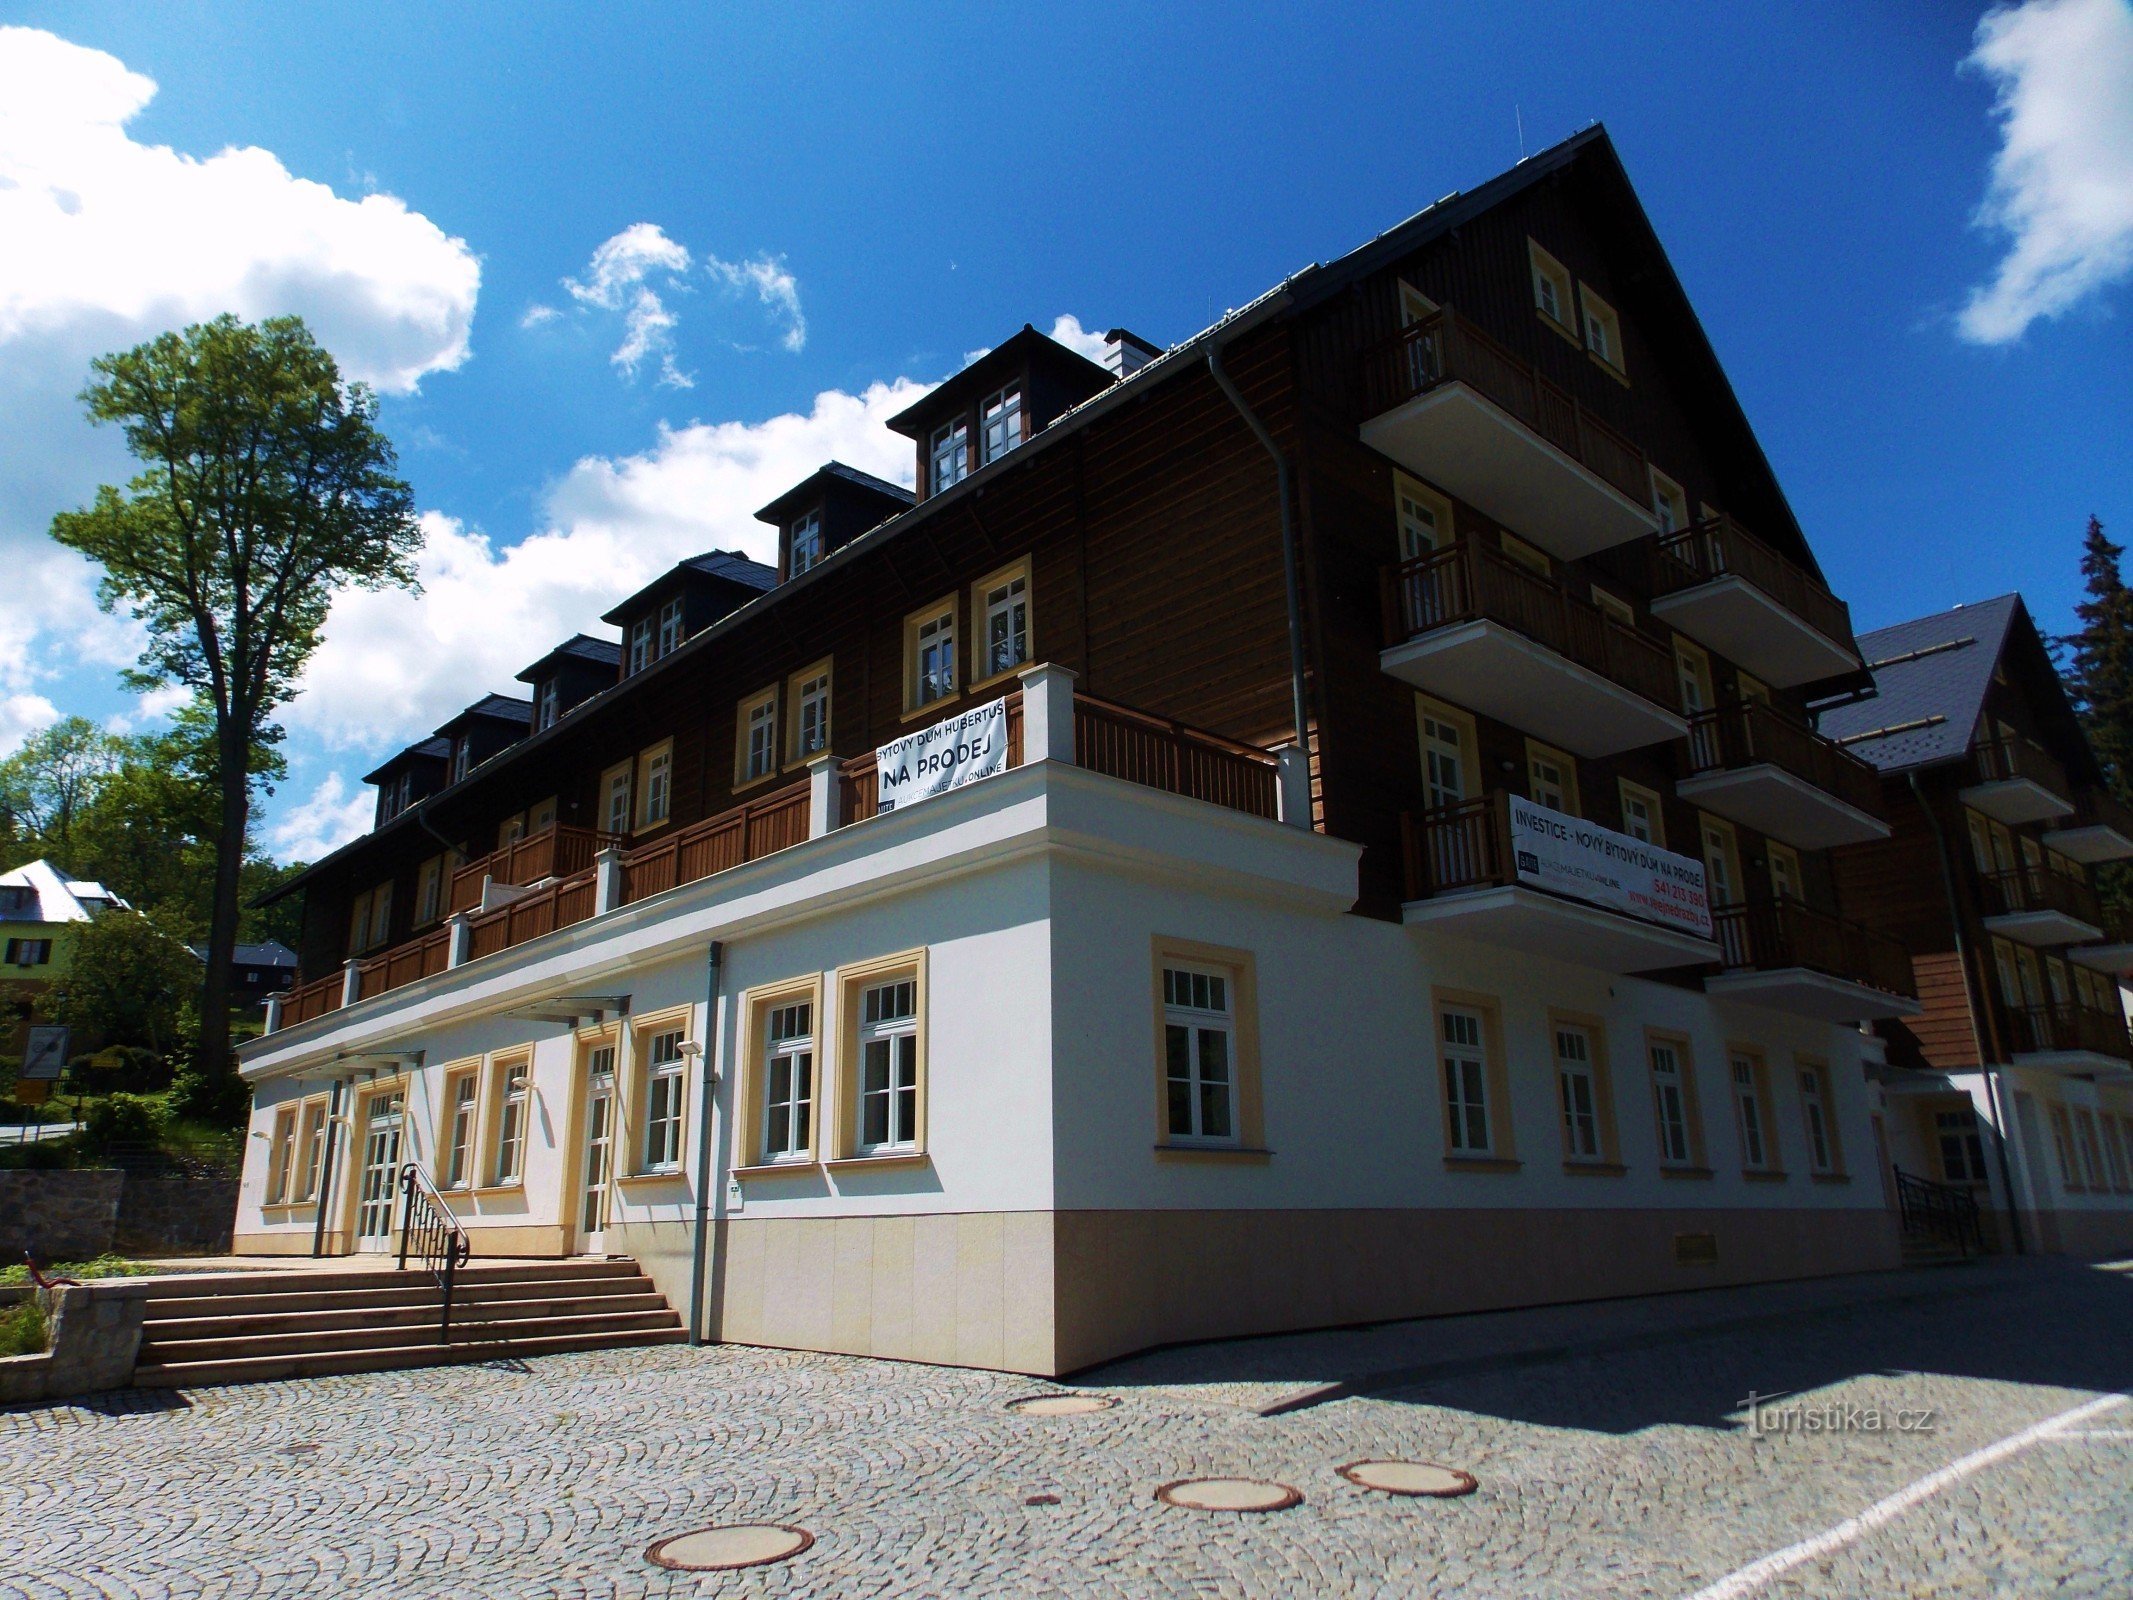 Het legendarische Hotel Hubertus in Karlová Studánka